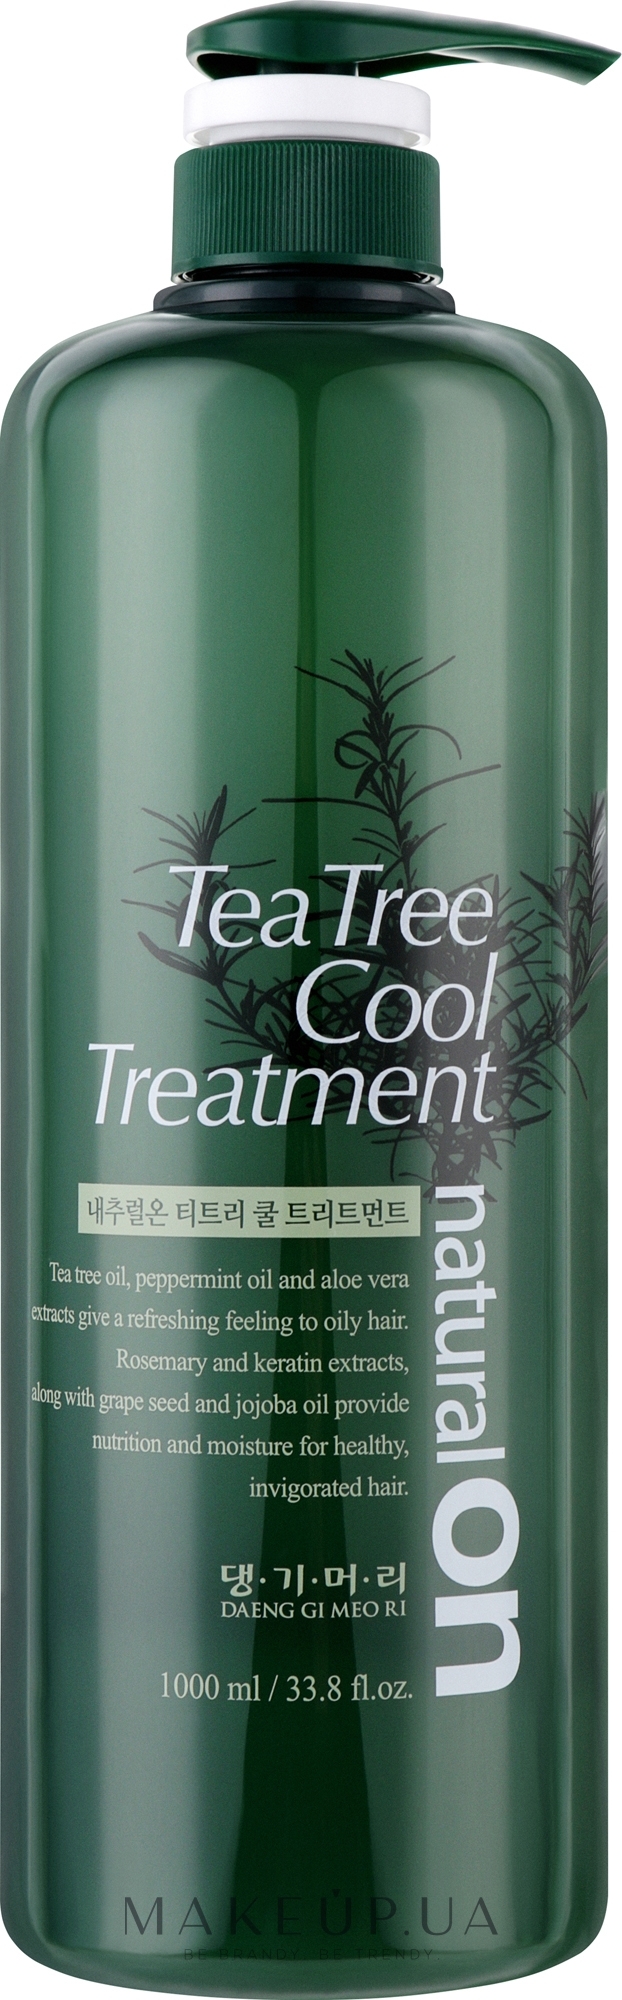 Охолоджувальний кондиціонер на основі чайного дерева - Daeng Gi Meo Ri naturalon Tea Tree Cool — фото 1000ml